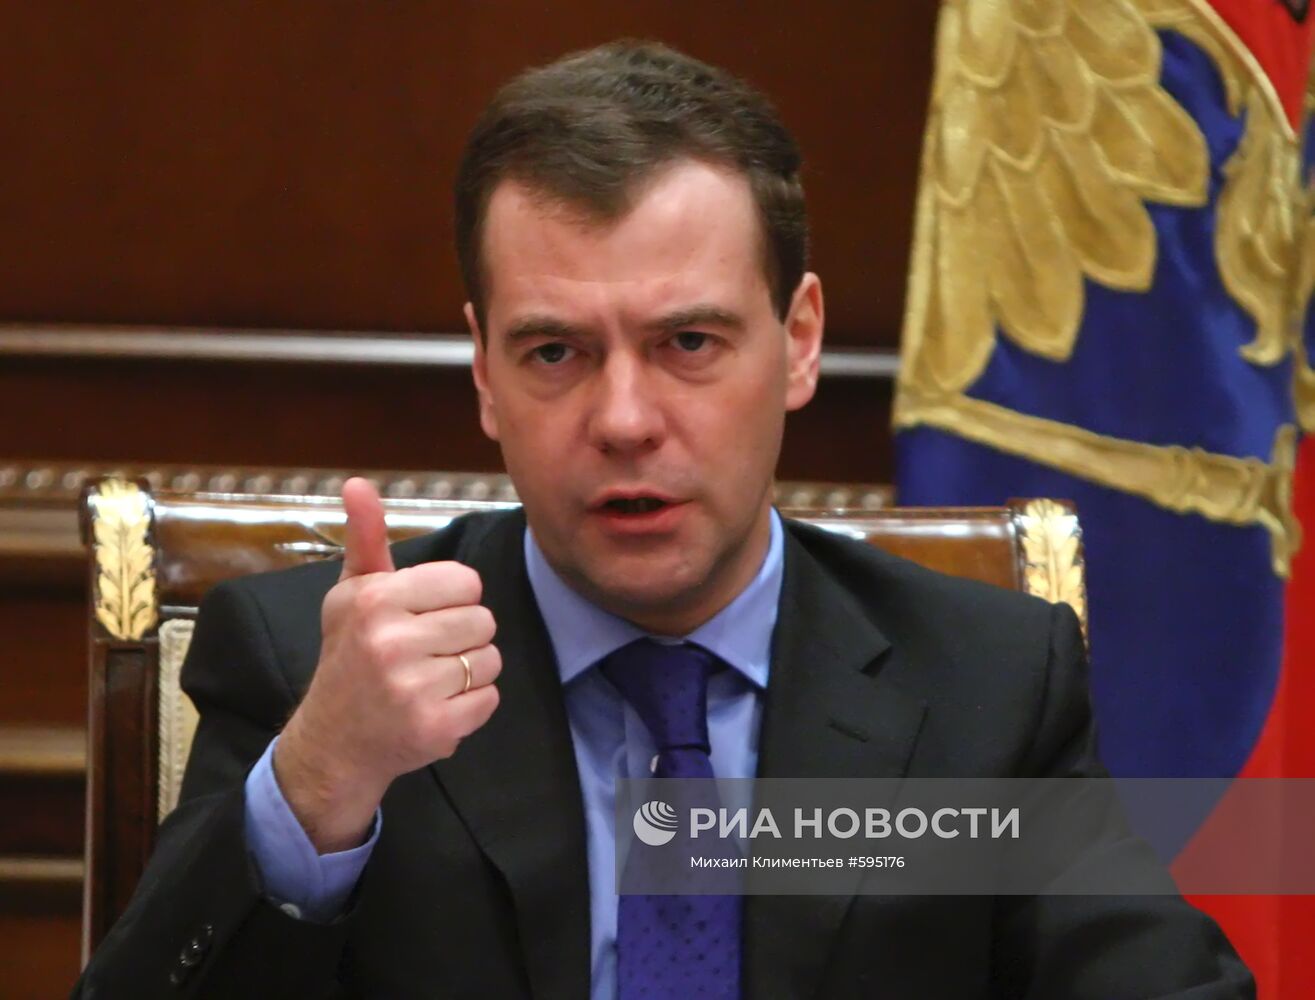 Д.Медведев провел совещание по информационному присутствию СНГ